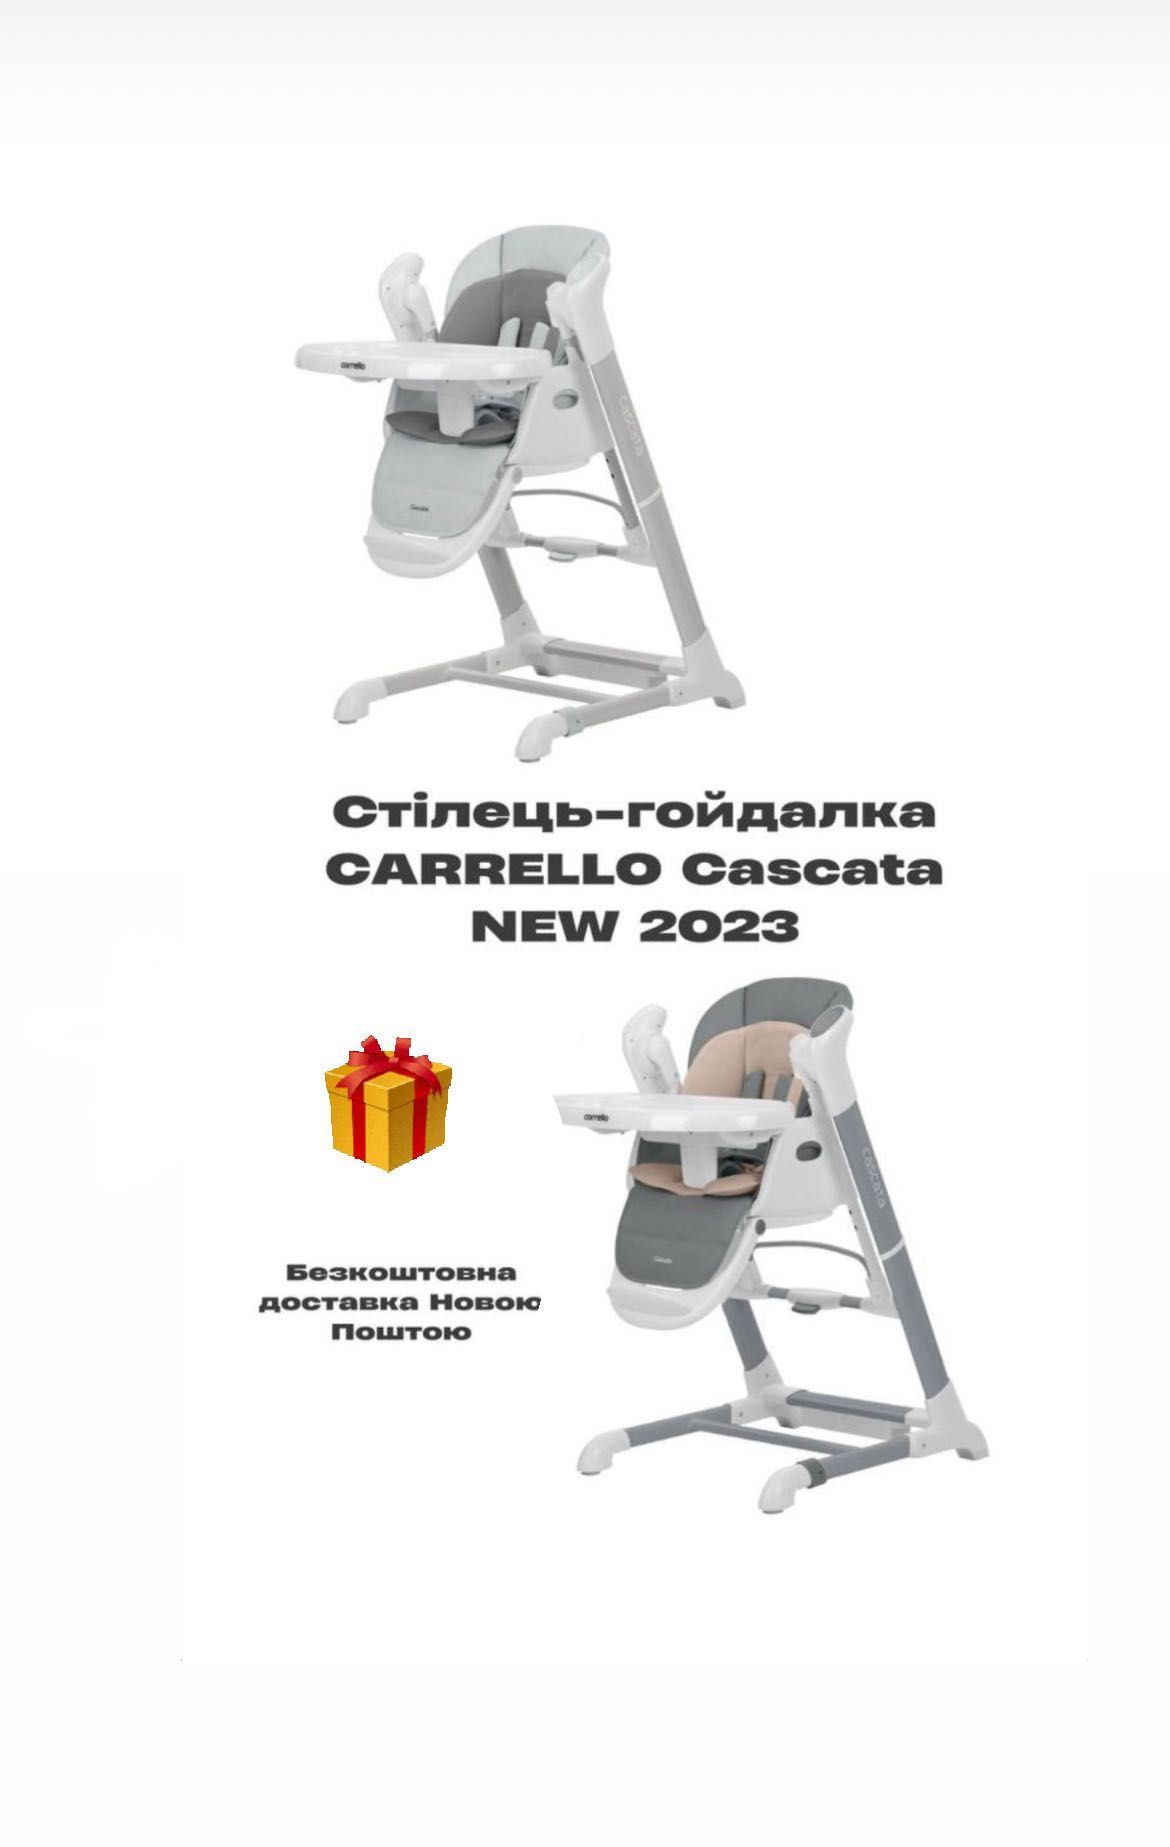 Carrello Cascata стілець-гойдалка столик крісло заколисуючий центр